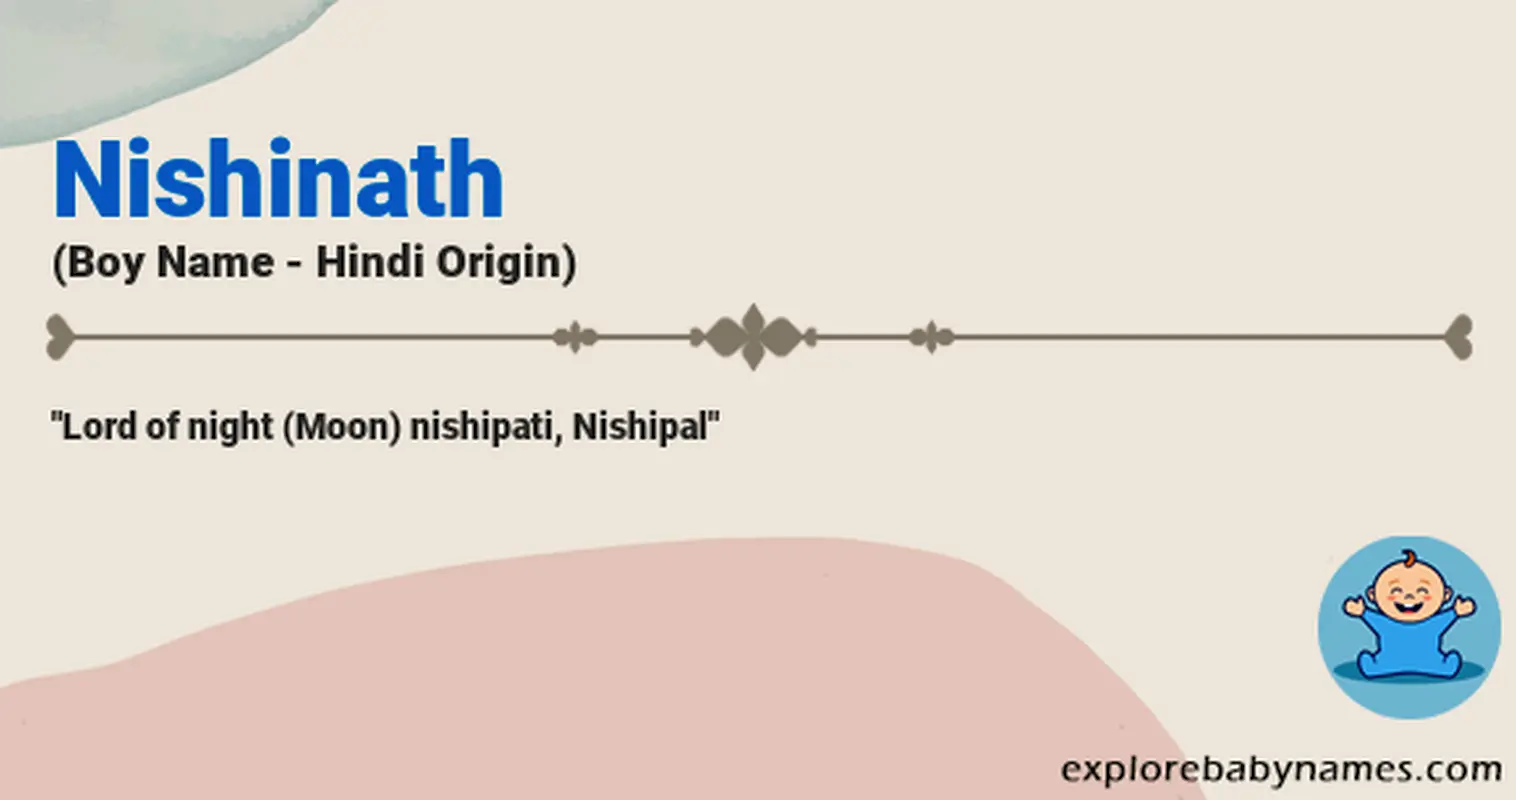 Meaning of Nishinath